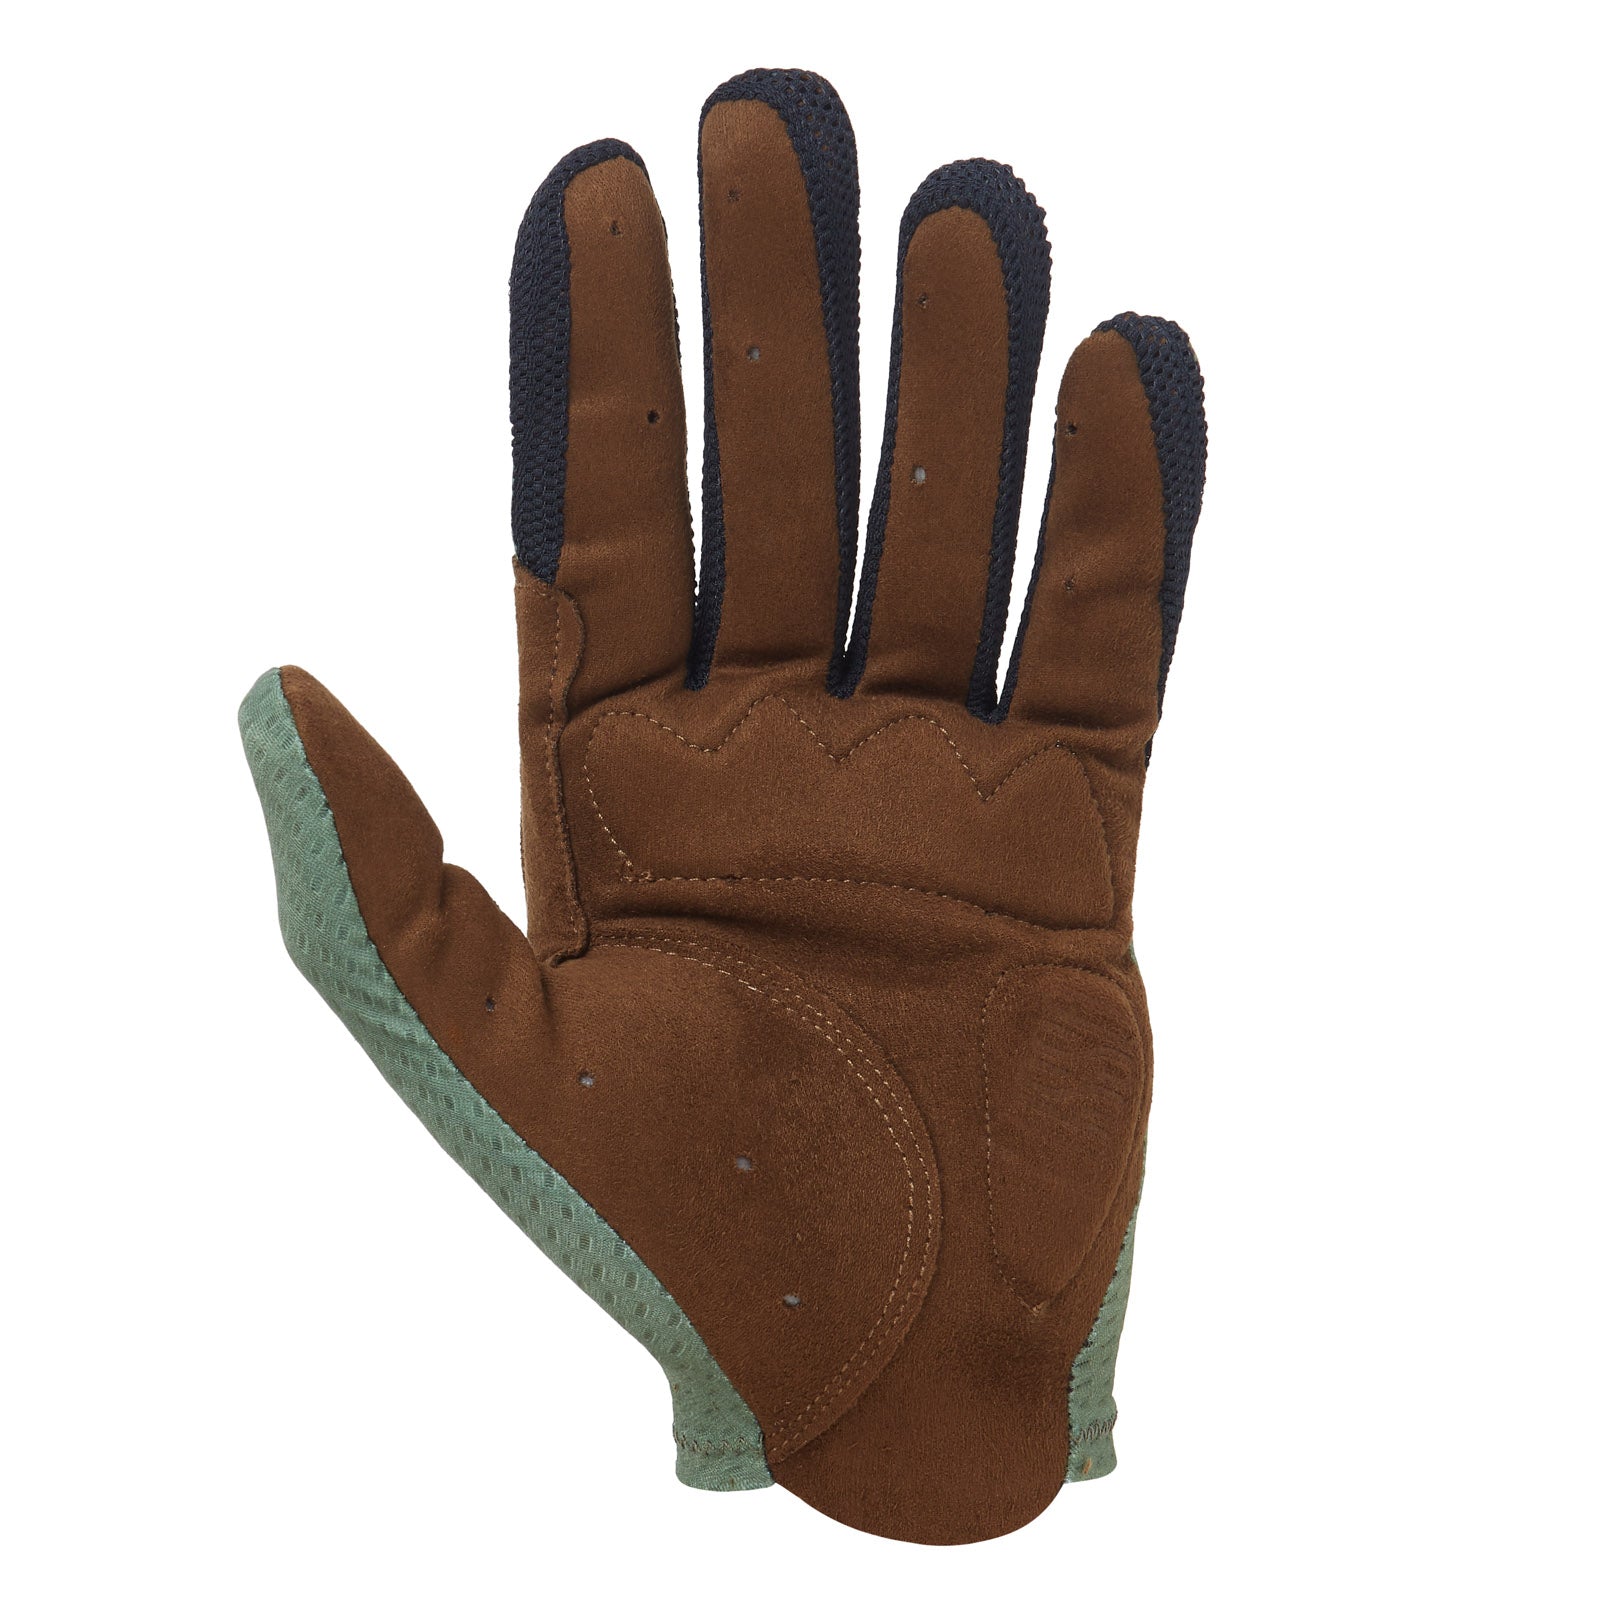 Terra gloves - Lusso Cycle Wear